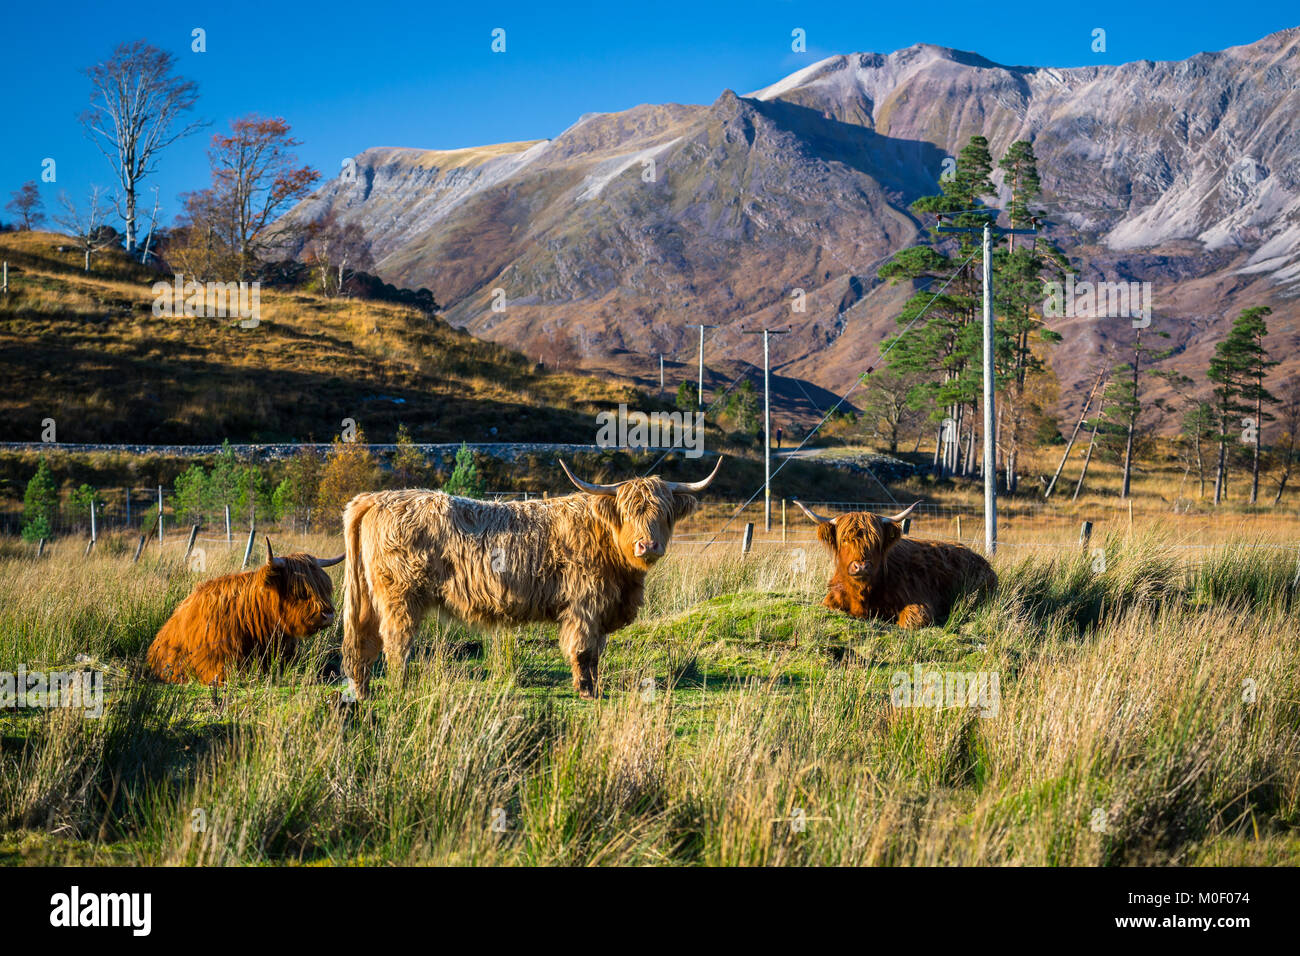 Dans la campagne écossaise Highland cattle Banque D'Images